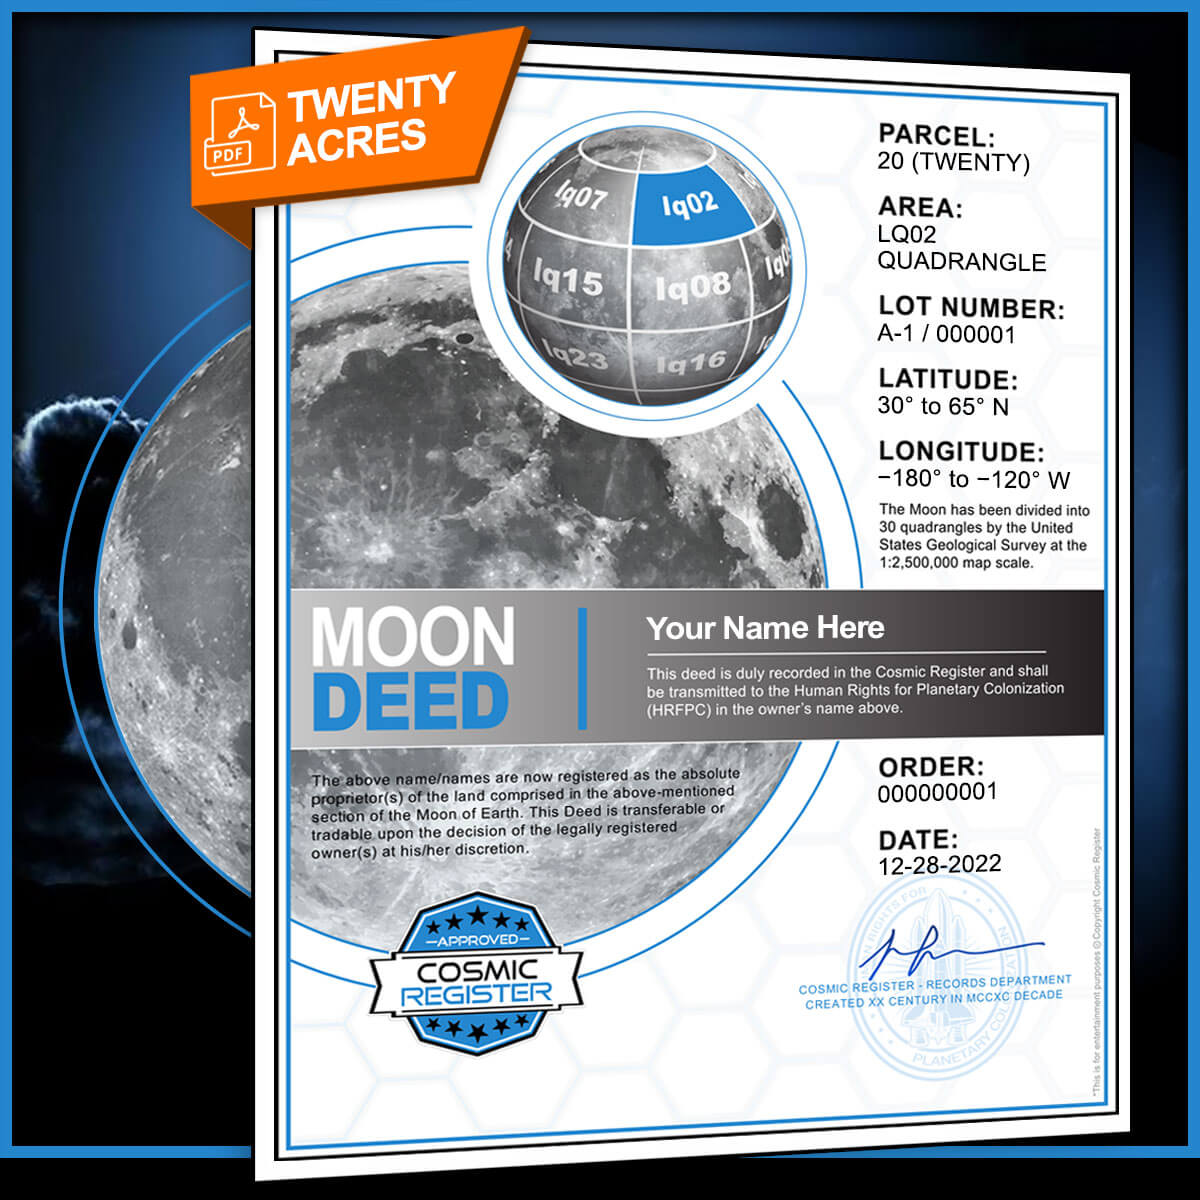 lunar land deed pdf email download cosmic register 20 acres of land